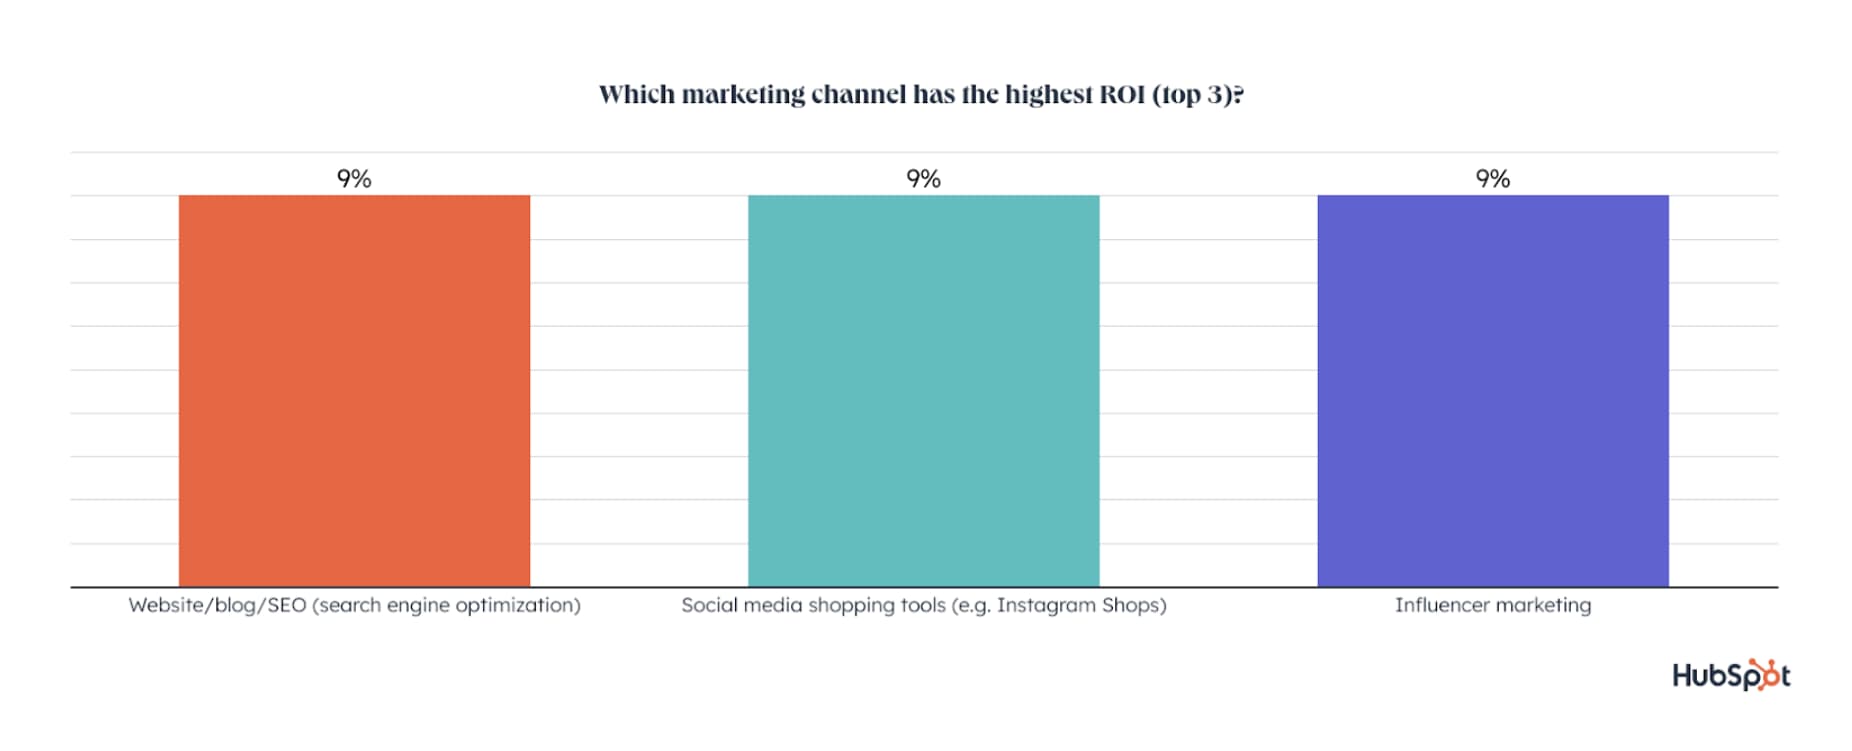 نمودار نموداری که وبلاگ نویسی، ابزارهای خرید رسانه های اجتماعی و بازاریابی تأثیرگذار را نشان می دهد که همگی با بالاترین بازده بازگشت سرمایه مرتبط هستند